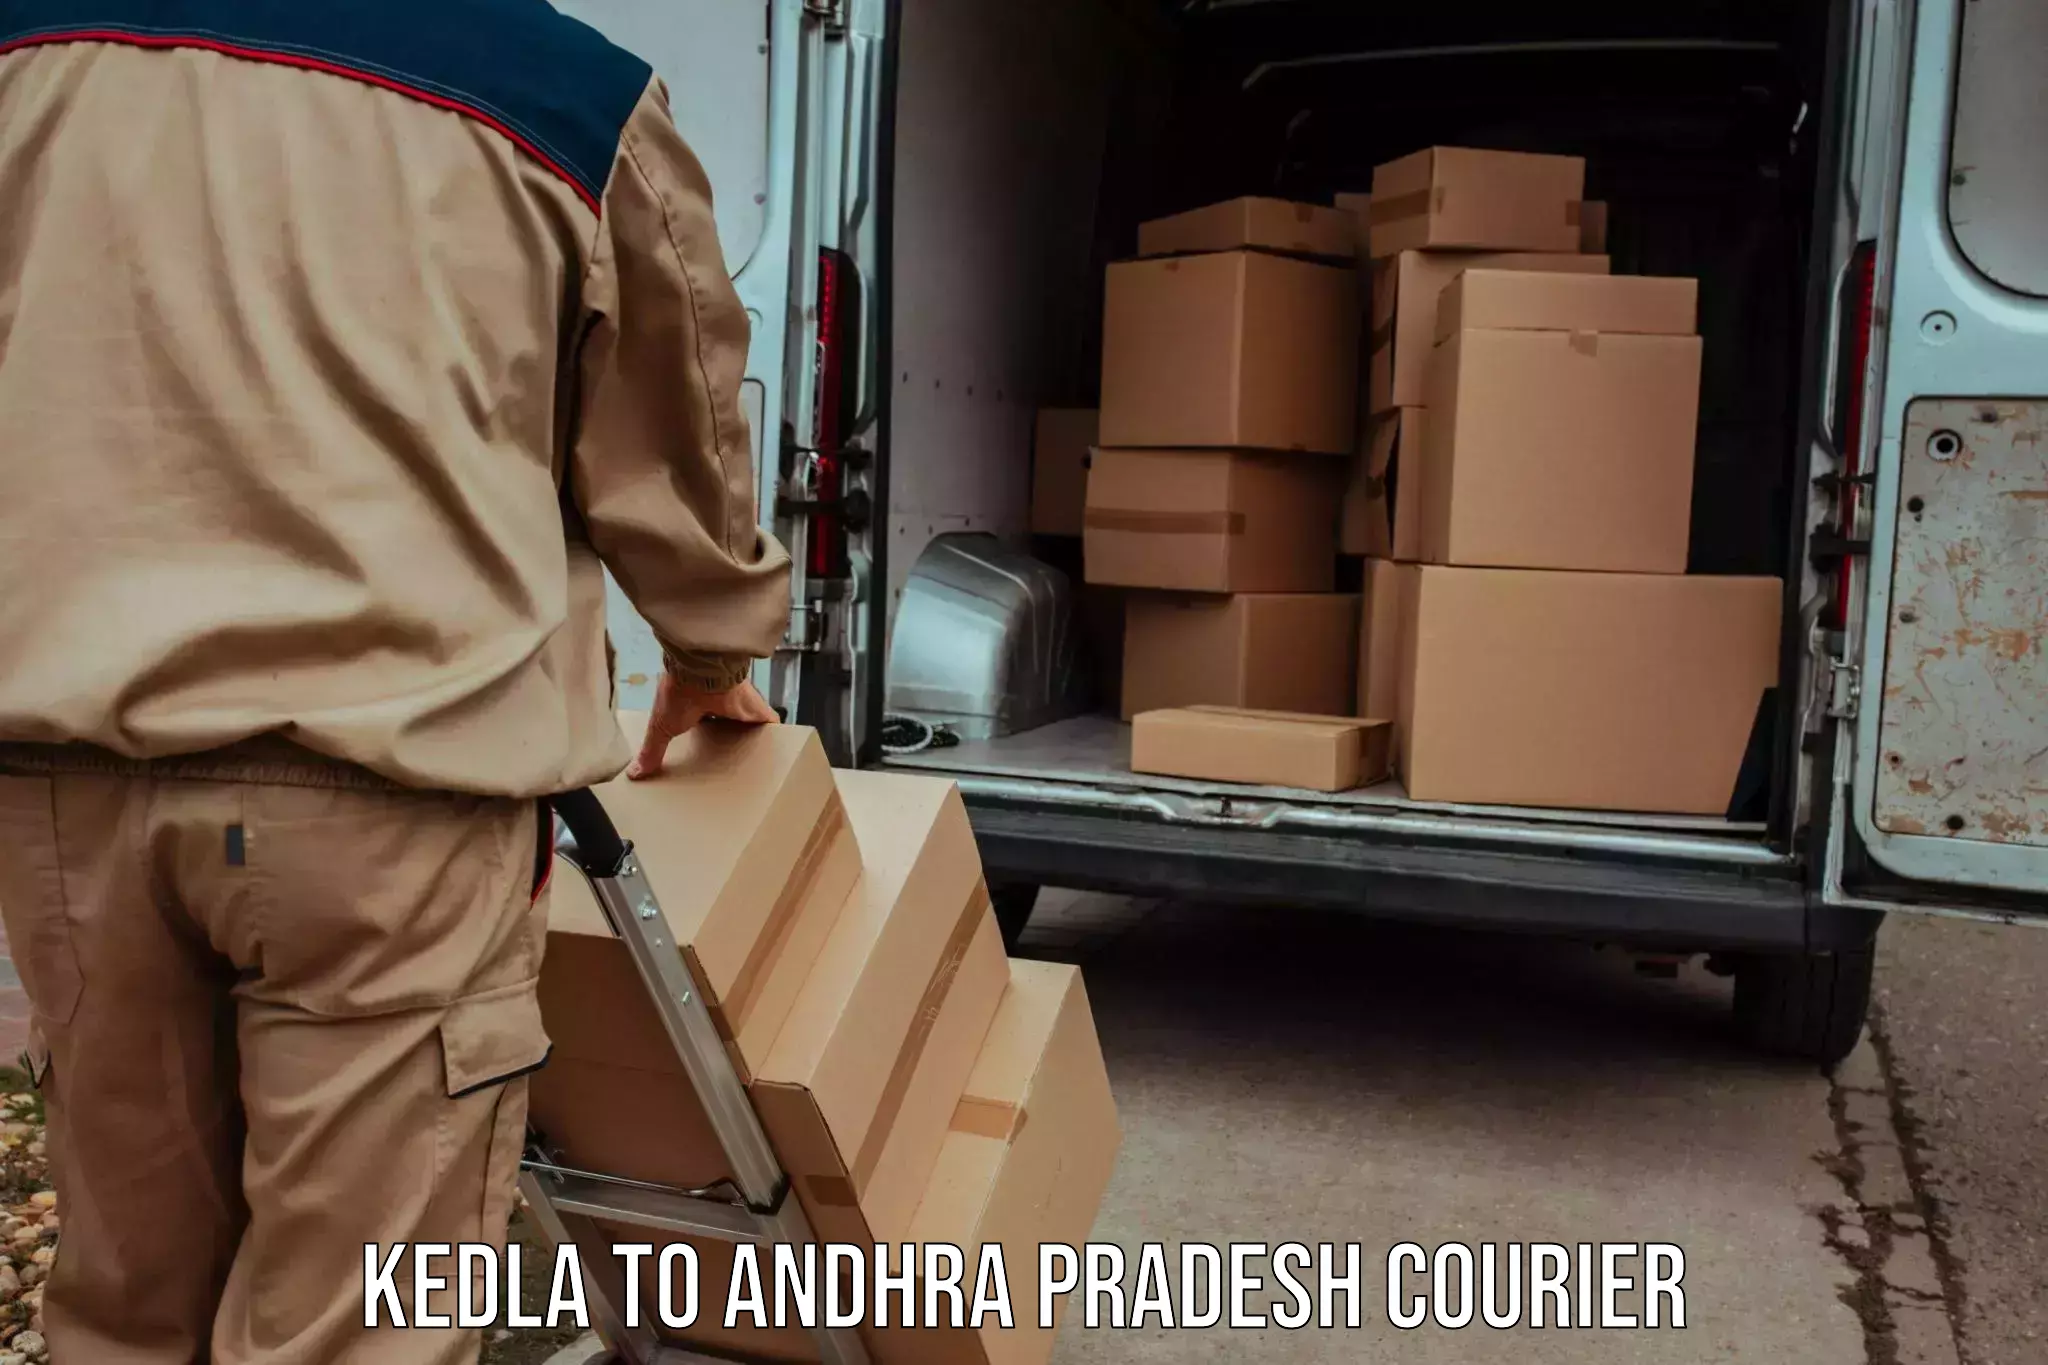 Full-service courier options Kedla to Nandikotkur